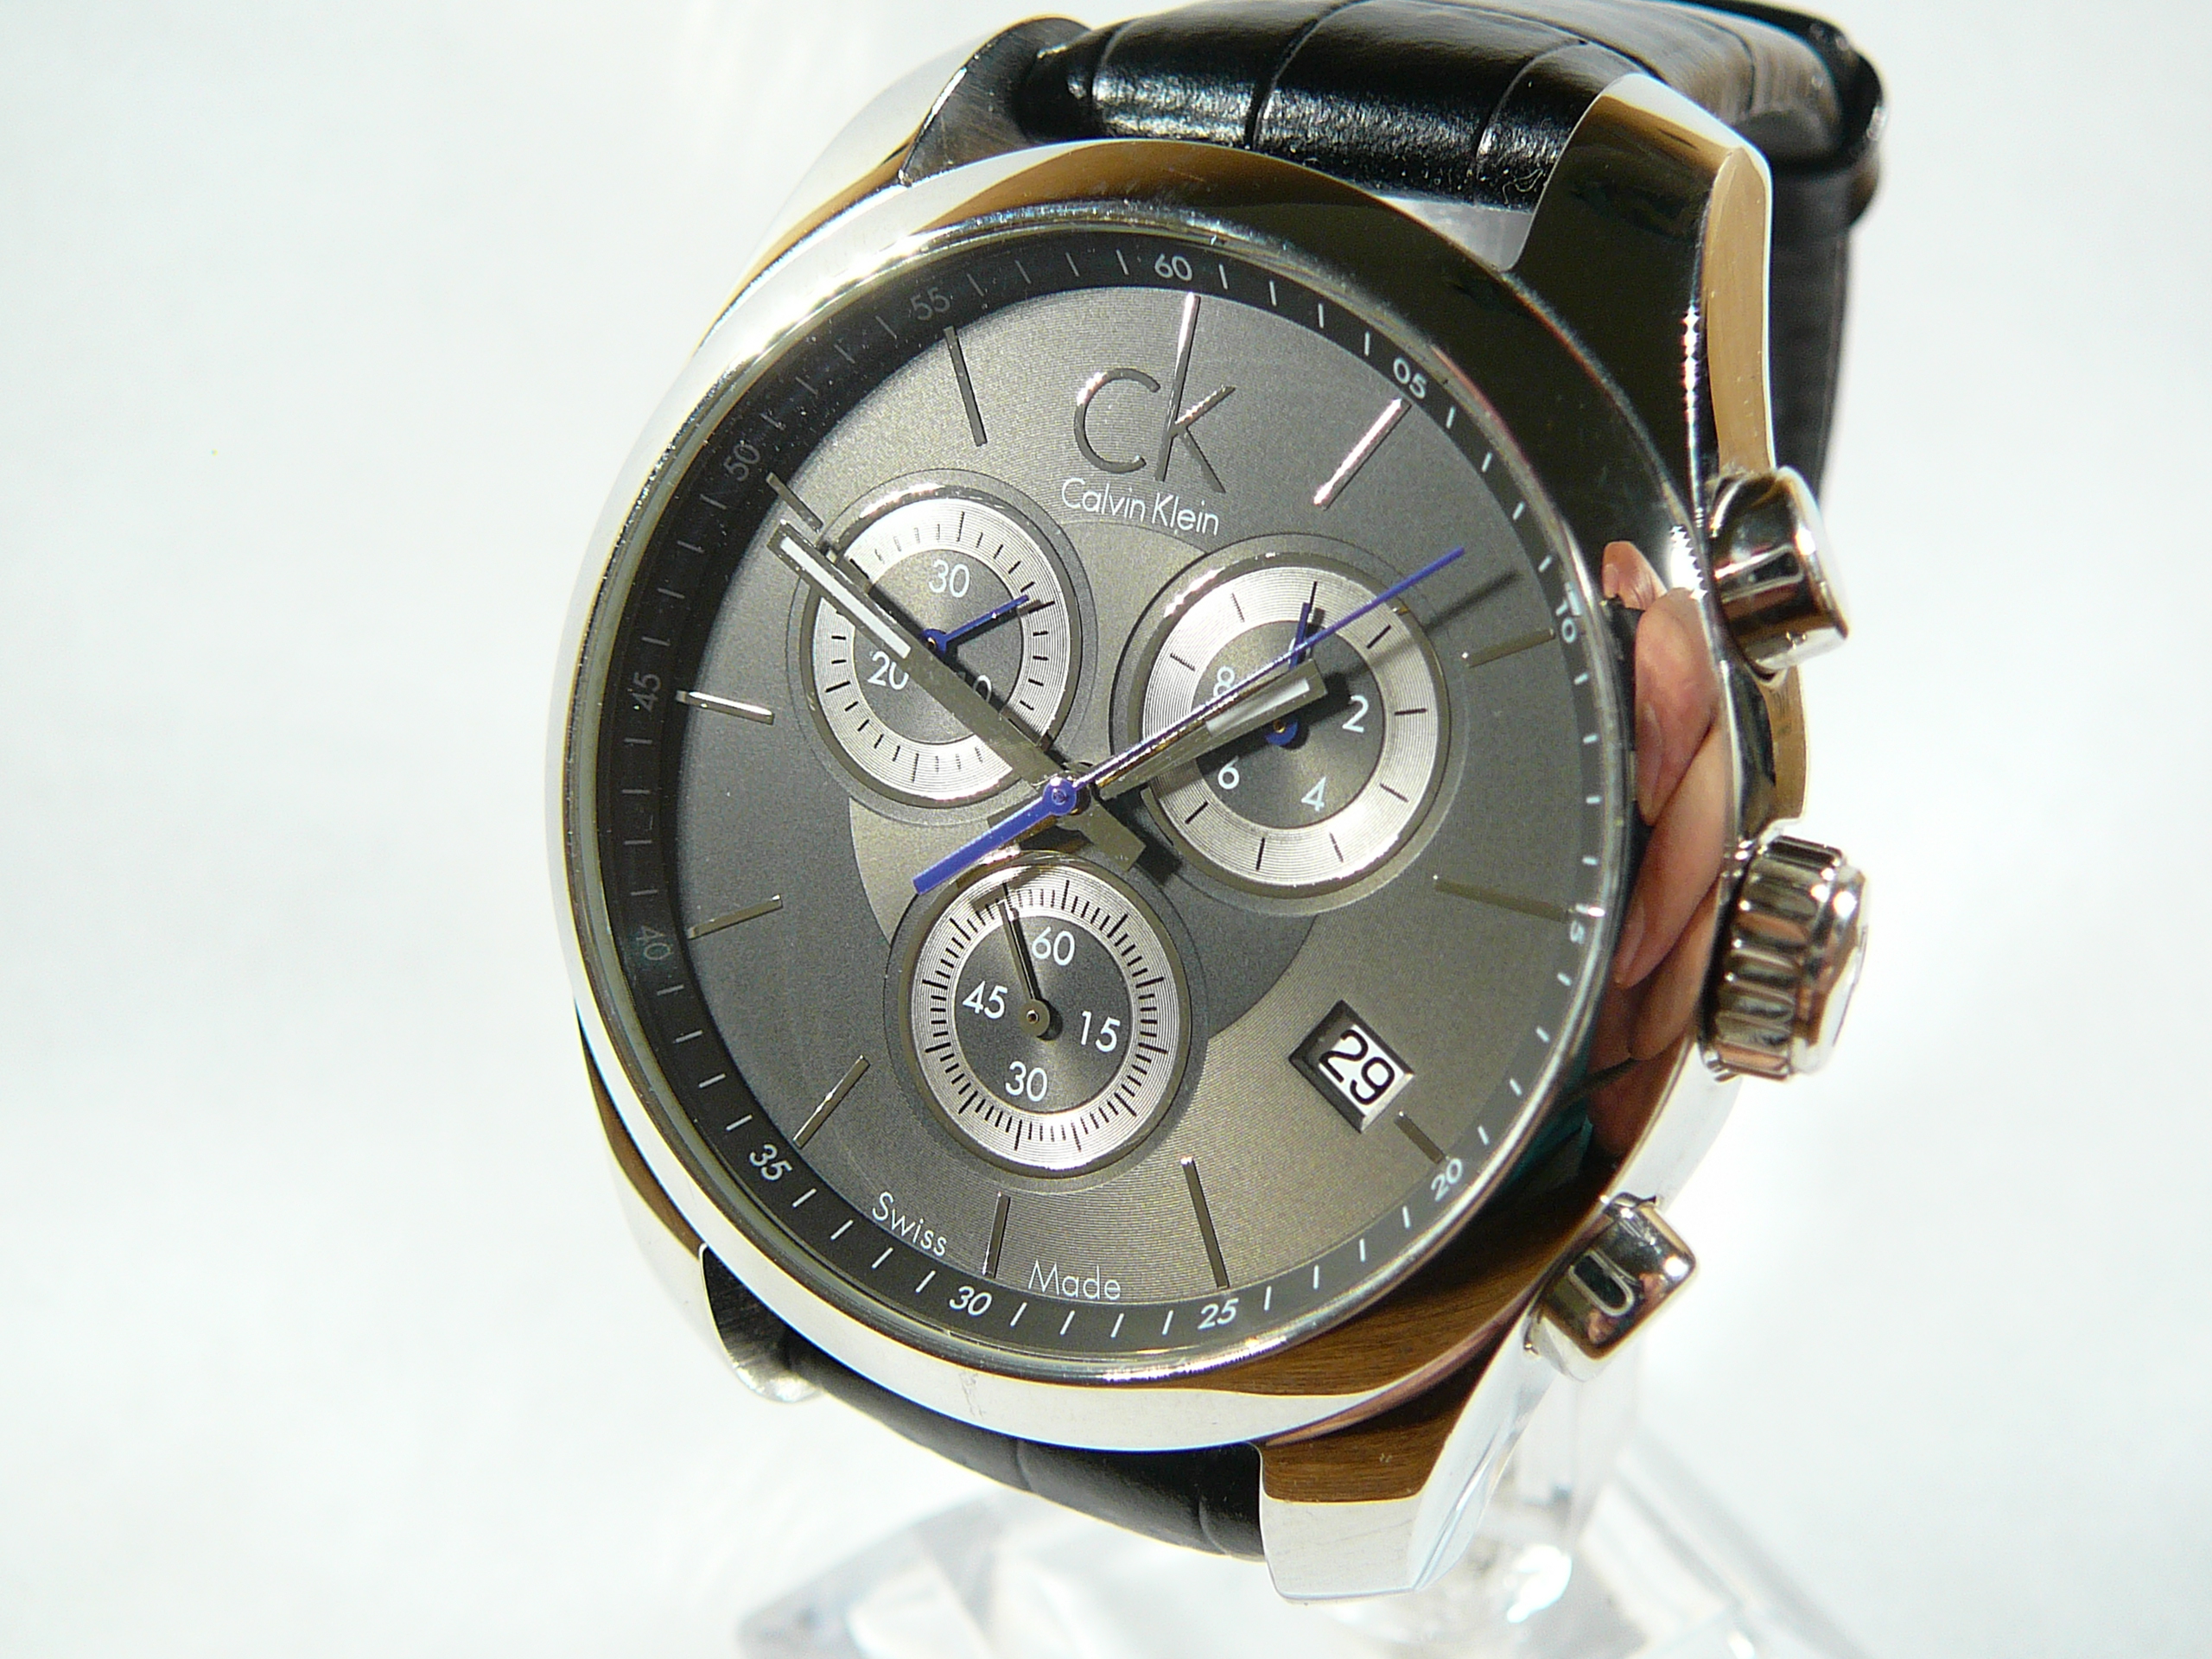 Gents Calvin Klein Wrist Watch - Image 2 of 3